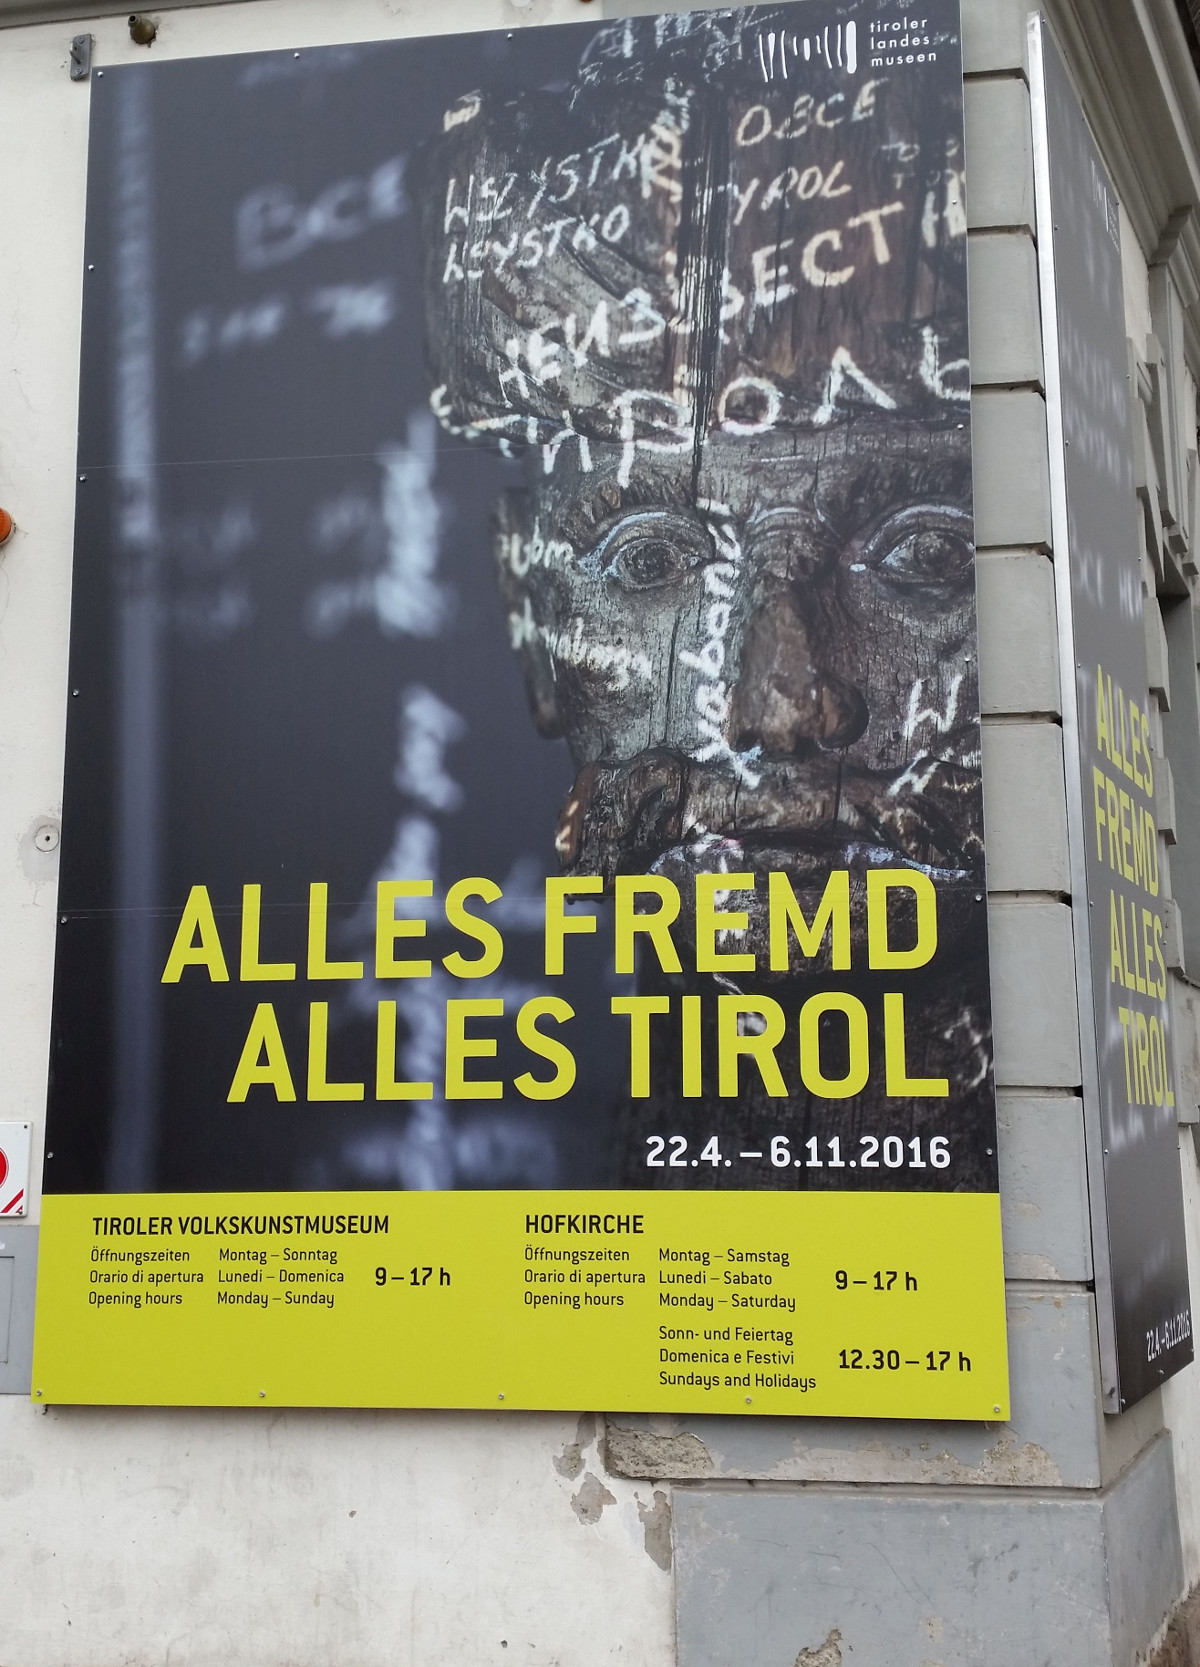 Plakat "ALLES FREMD ALLES TIROL"